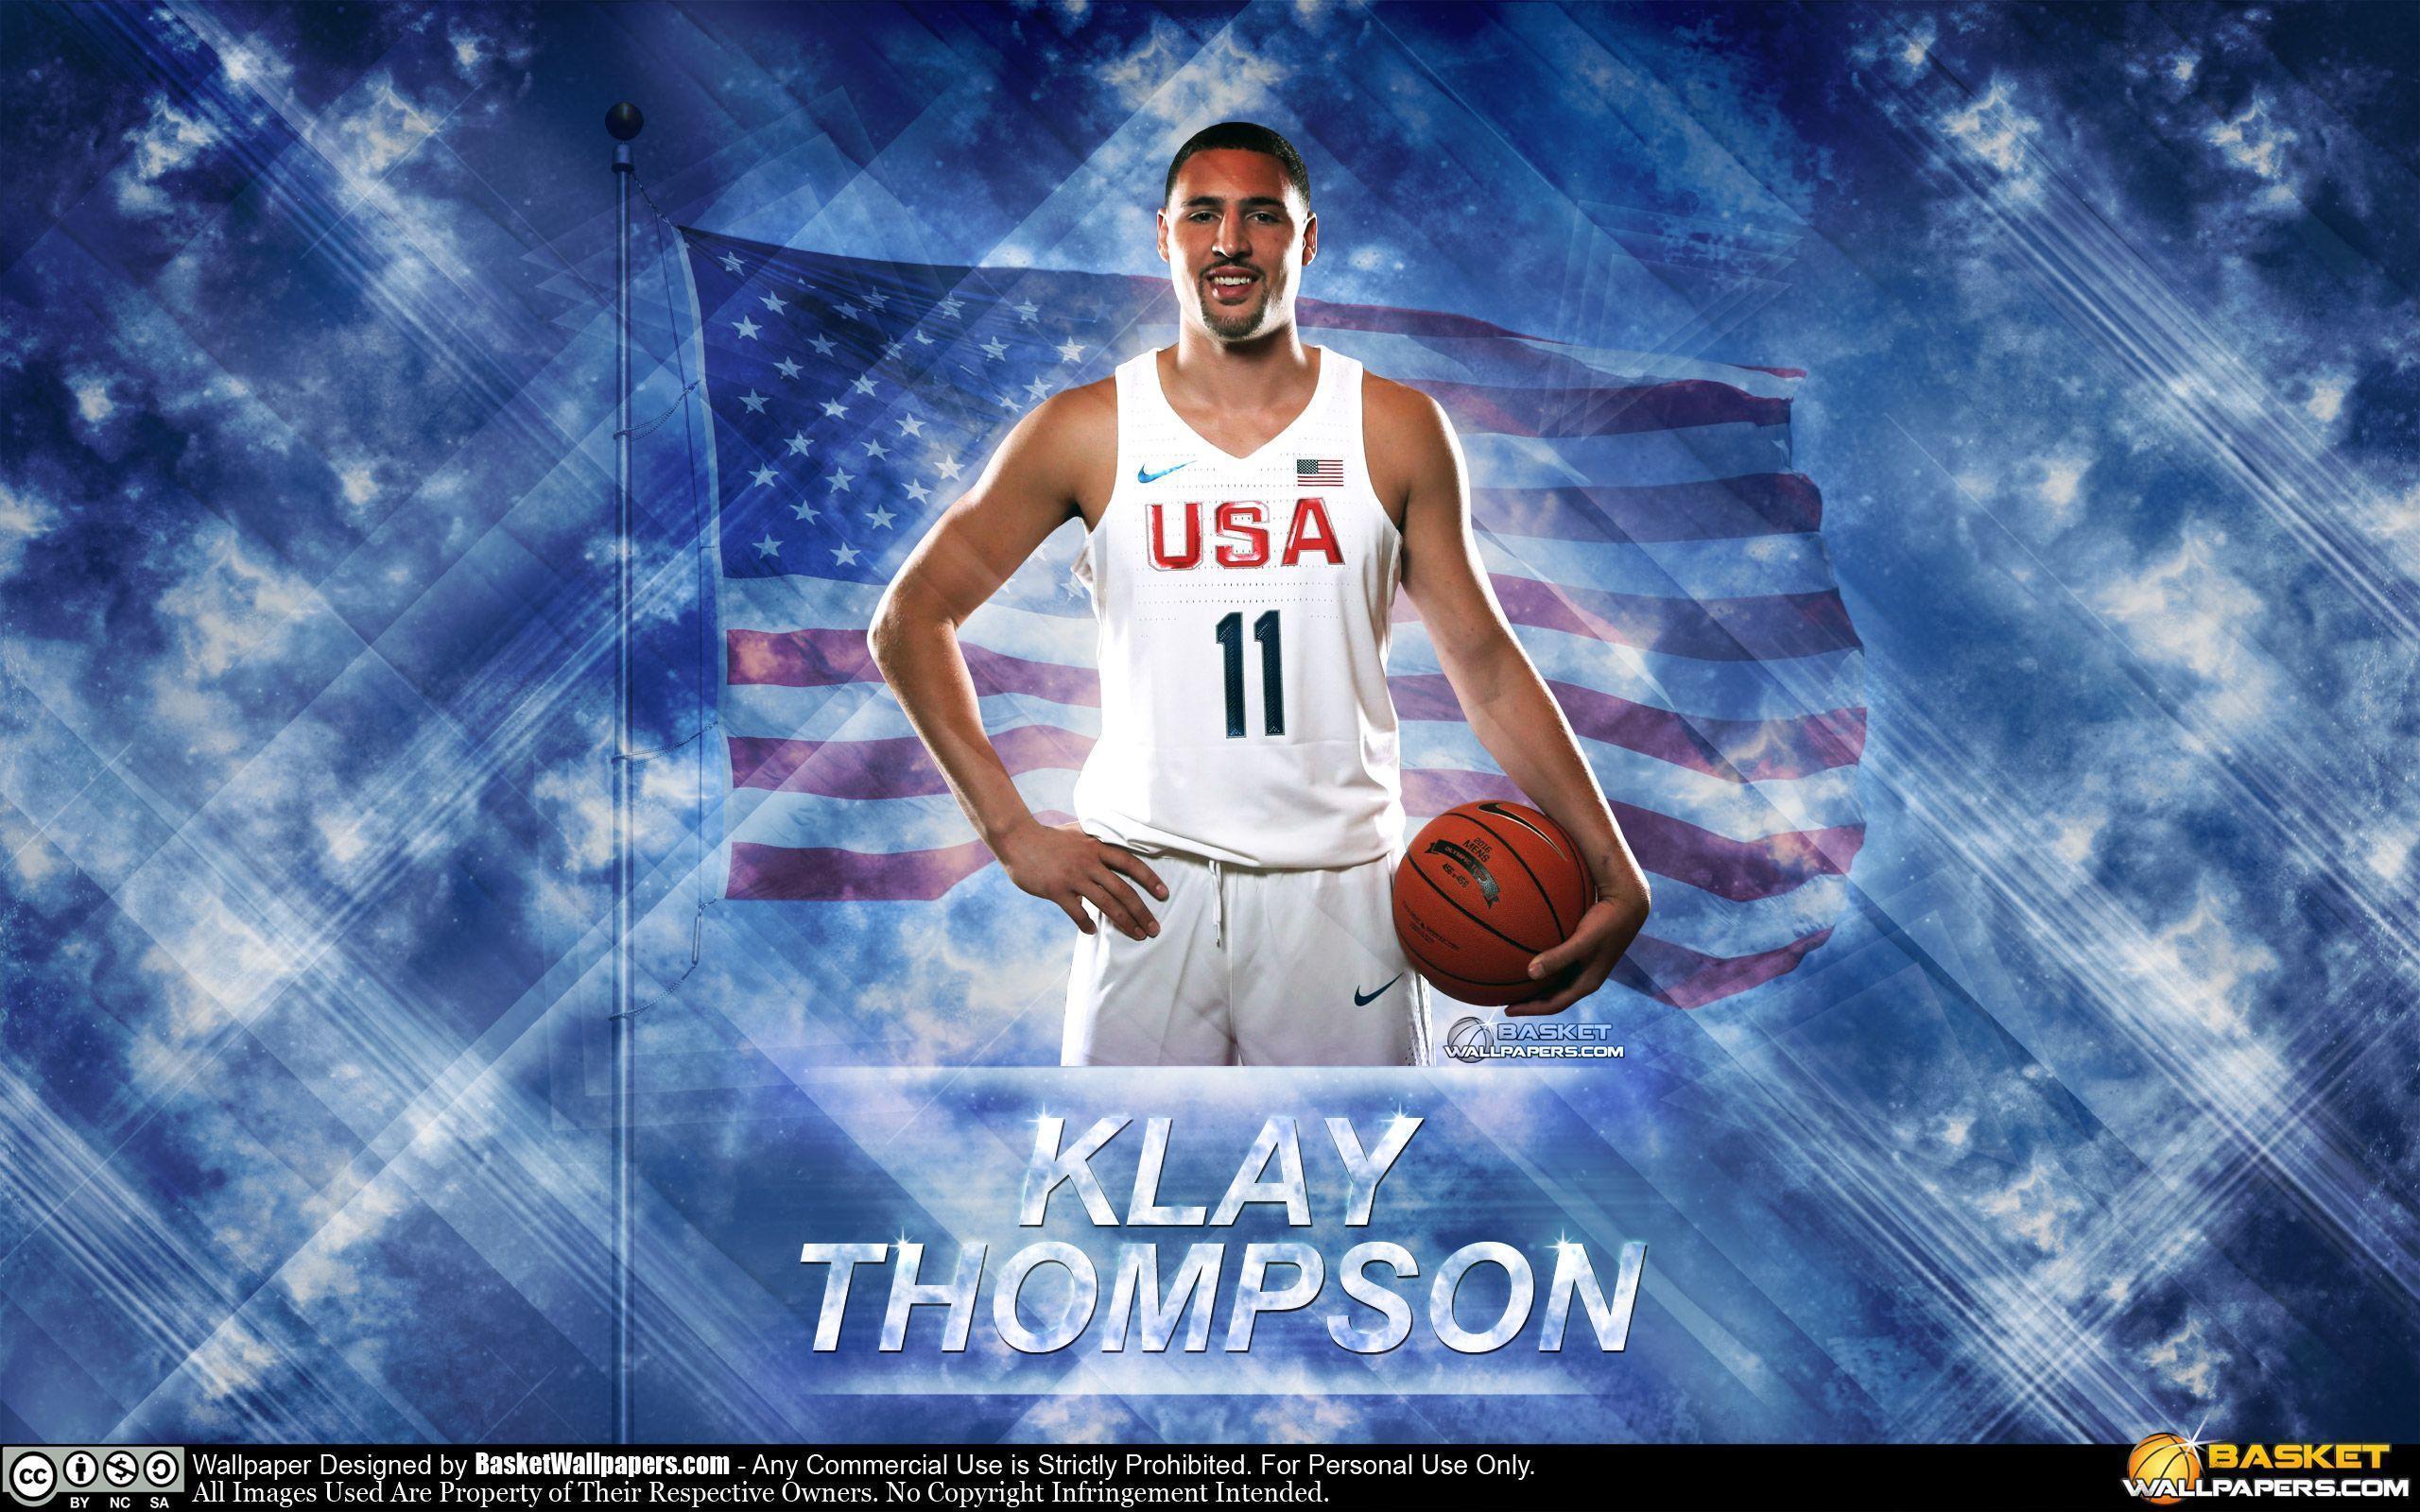 Klay Thompson Wallpaper. Basketball Wallpaper at